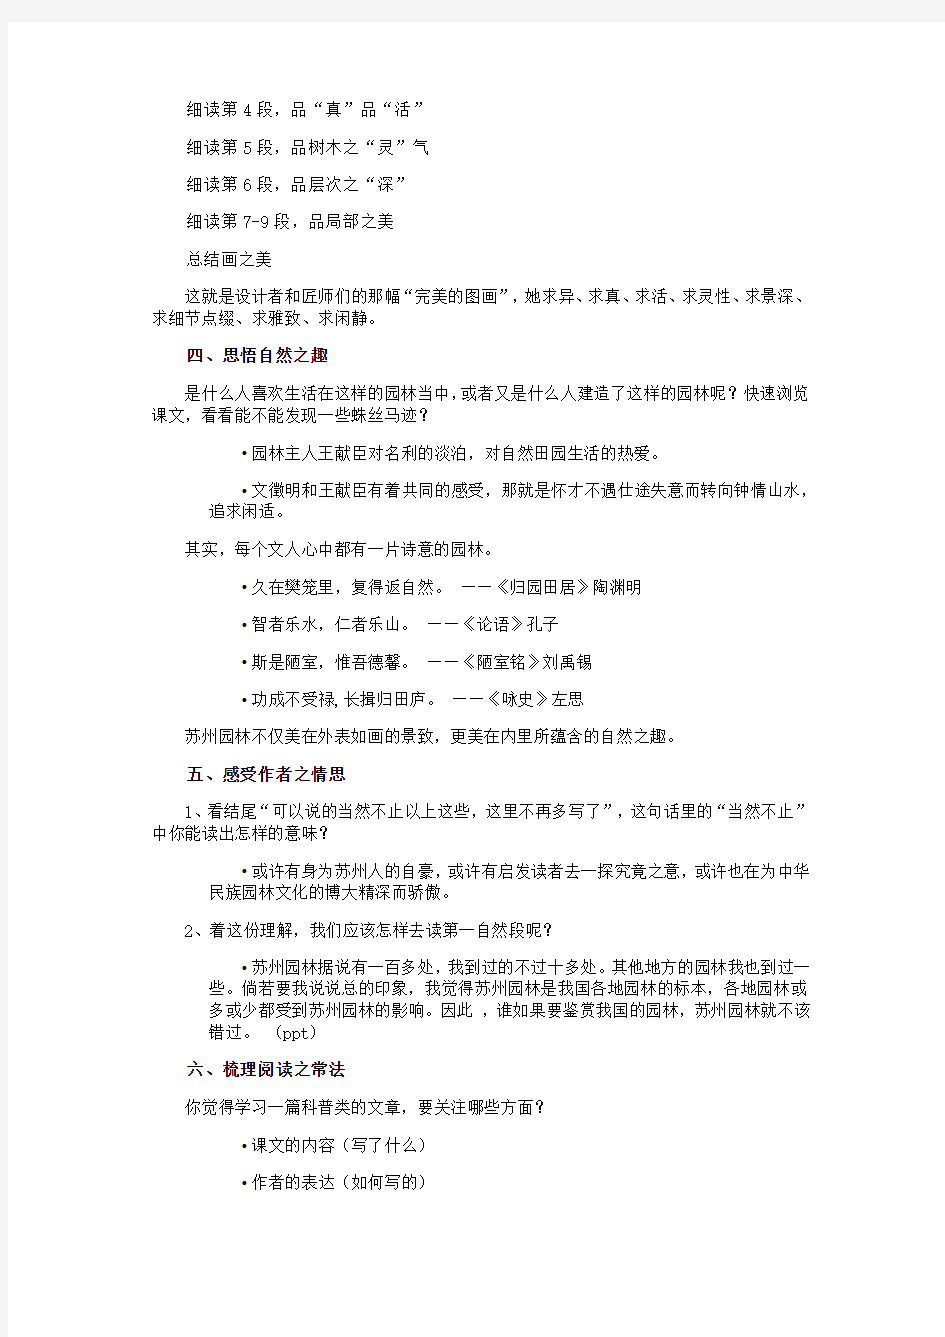 初中语文_苏州园林教学设计学情分析教材分析课后反思